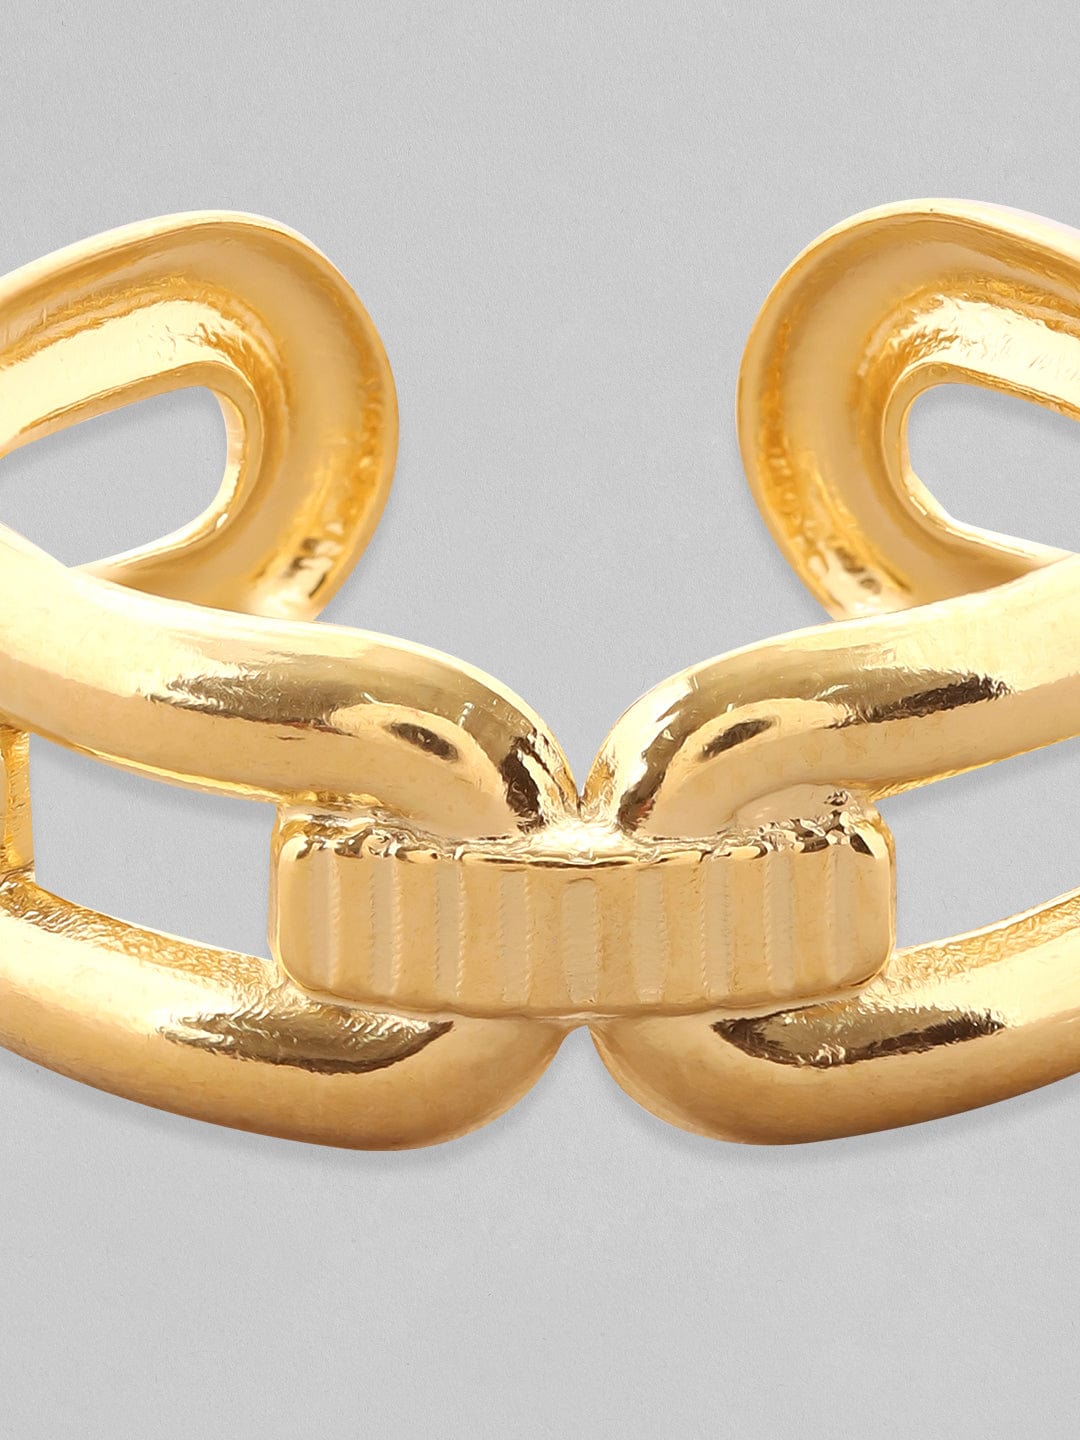 Rubans Voguish 18K Gold-Plated Textured Link Adjustable Finger Ring Rings